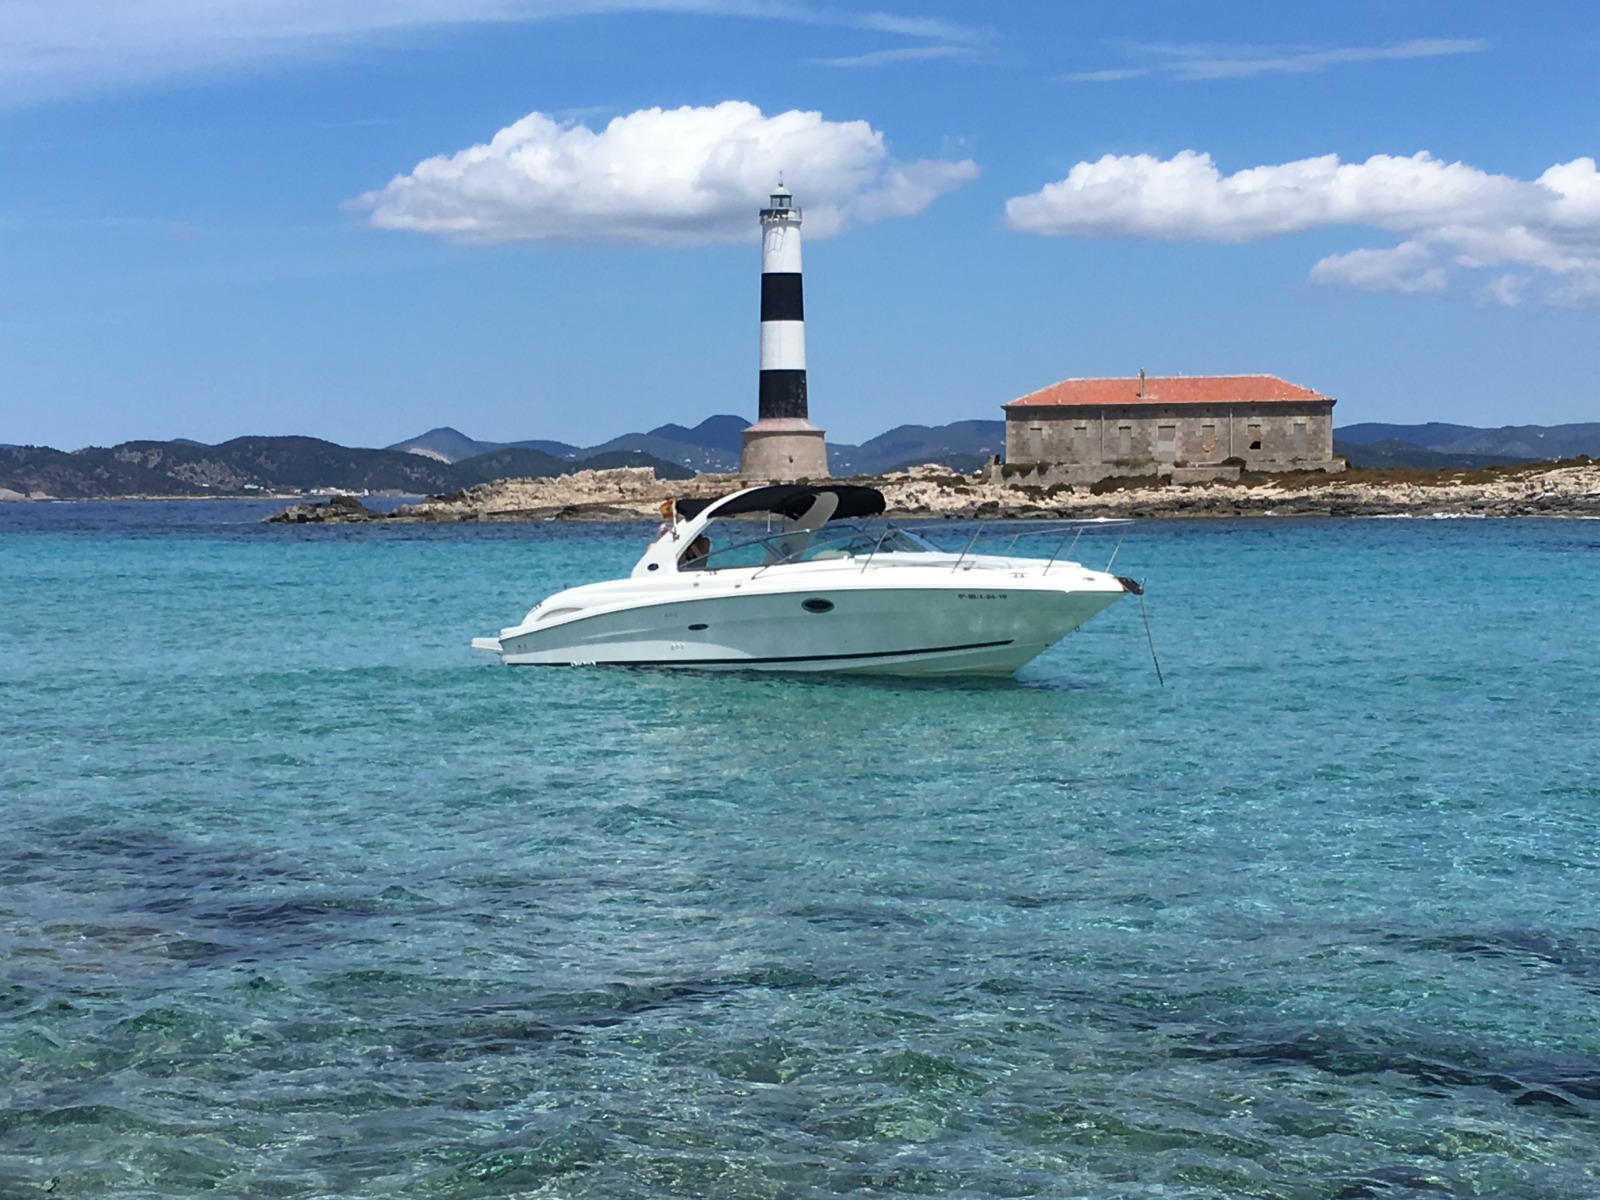 Lancha Monocasco Sea Ray 290 Super Sport con una cabina de alquiler en Ibiza con patrón